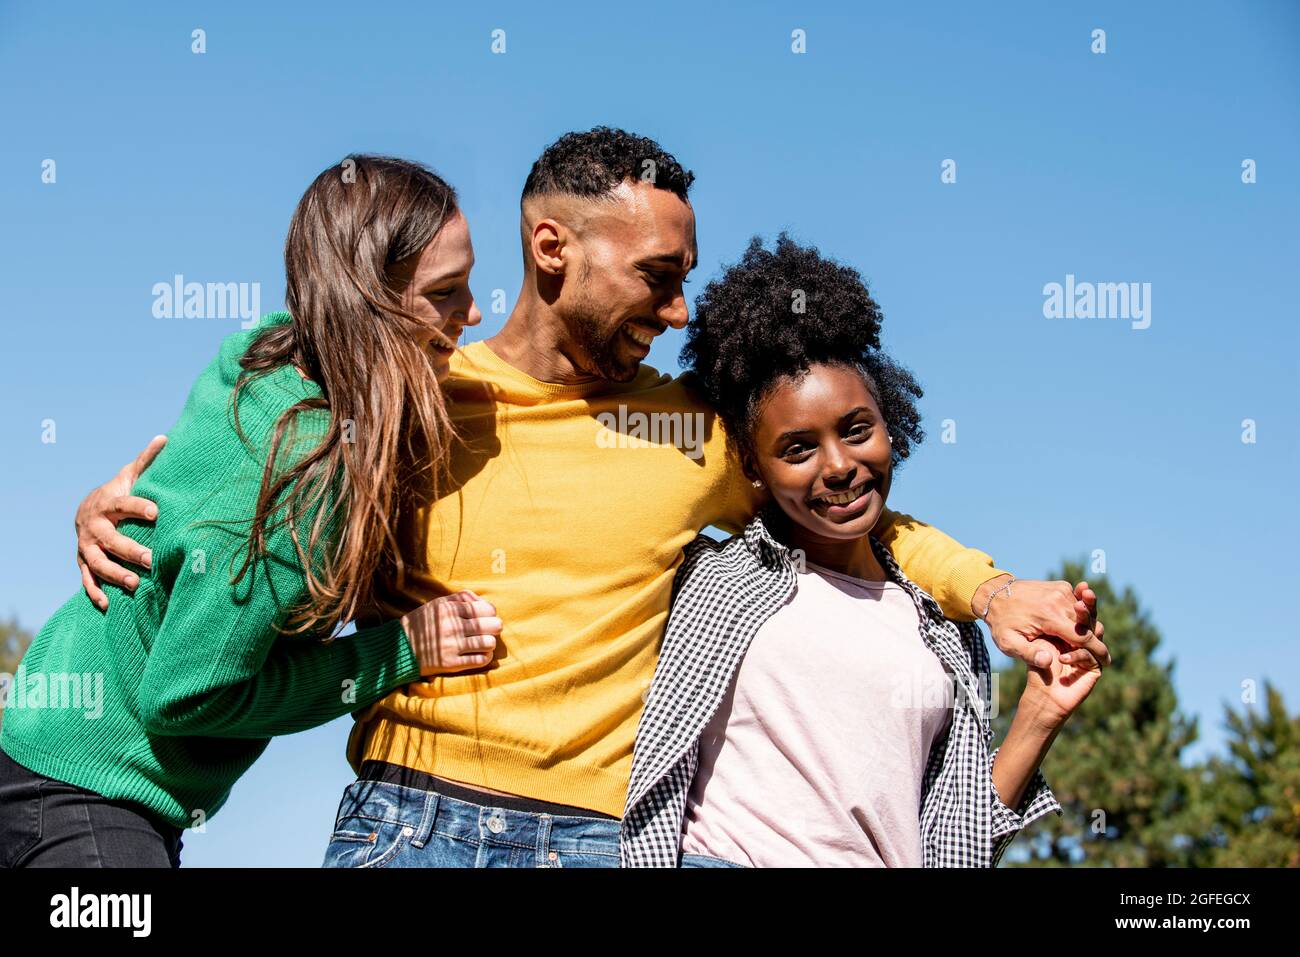 Retrato de jóvenes amigos sonrientes de pie con el brazo alrededor en el parque público Foto de stock